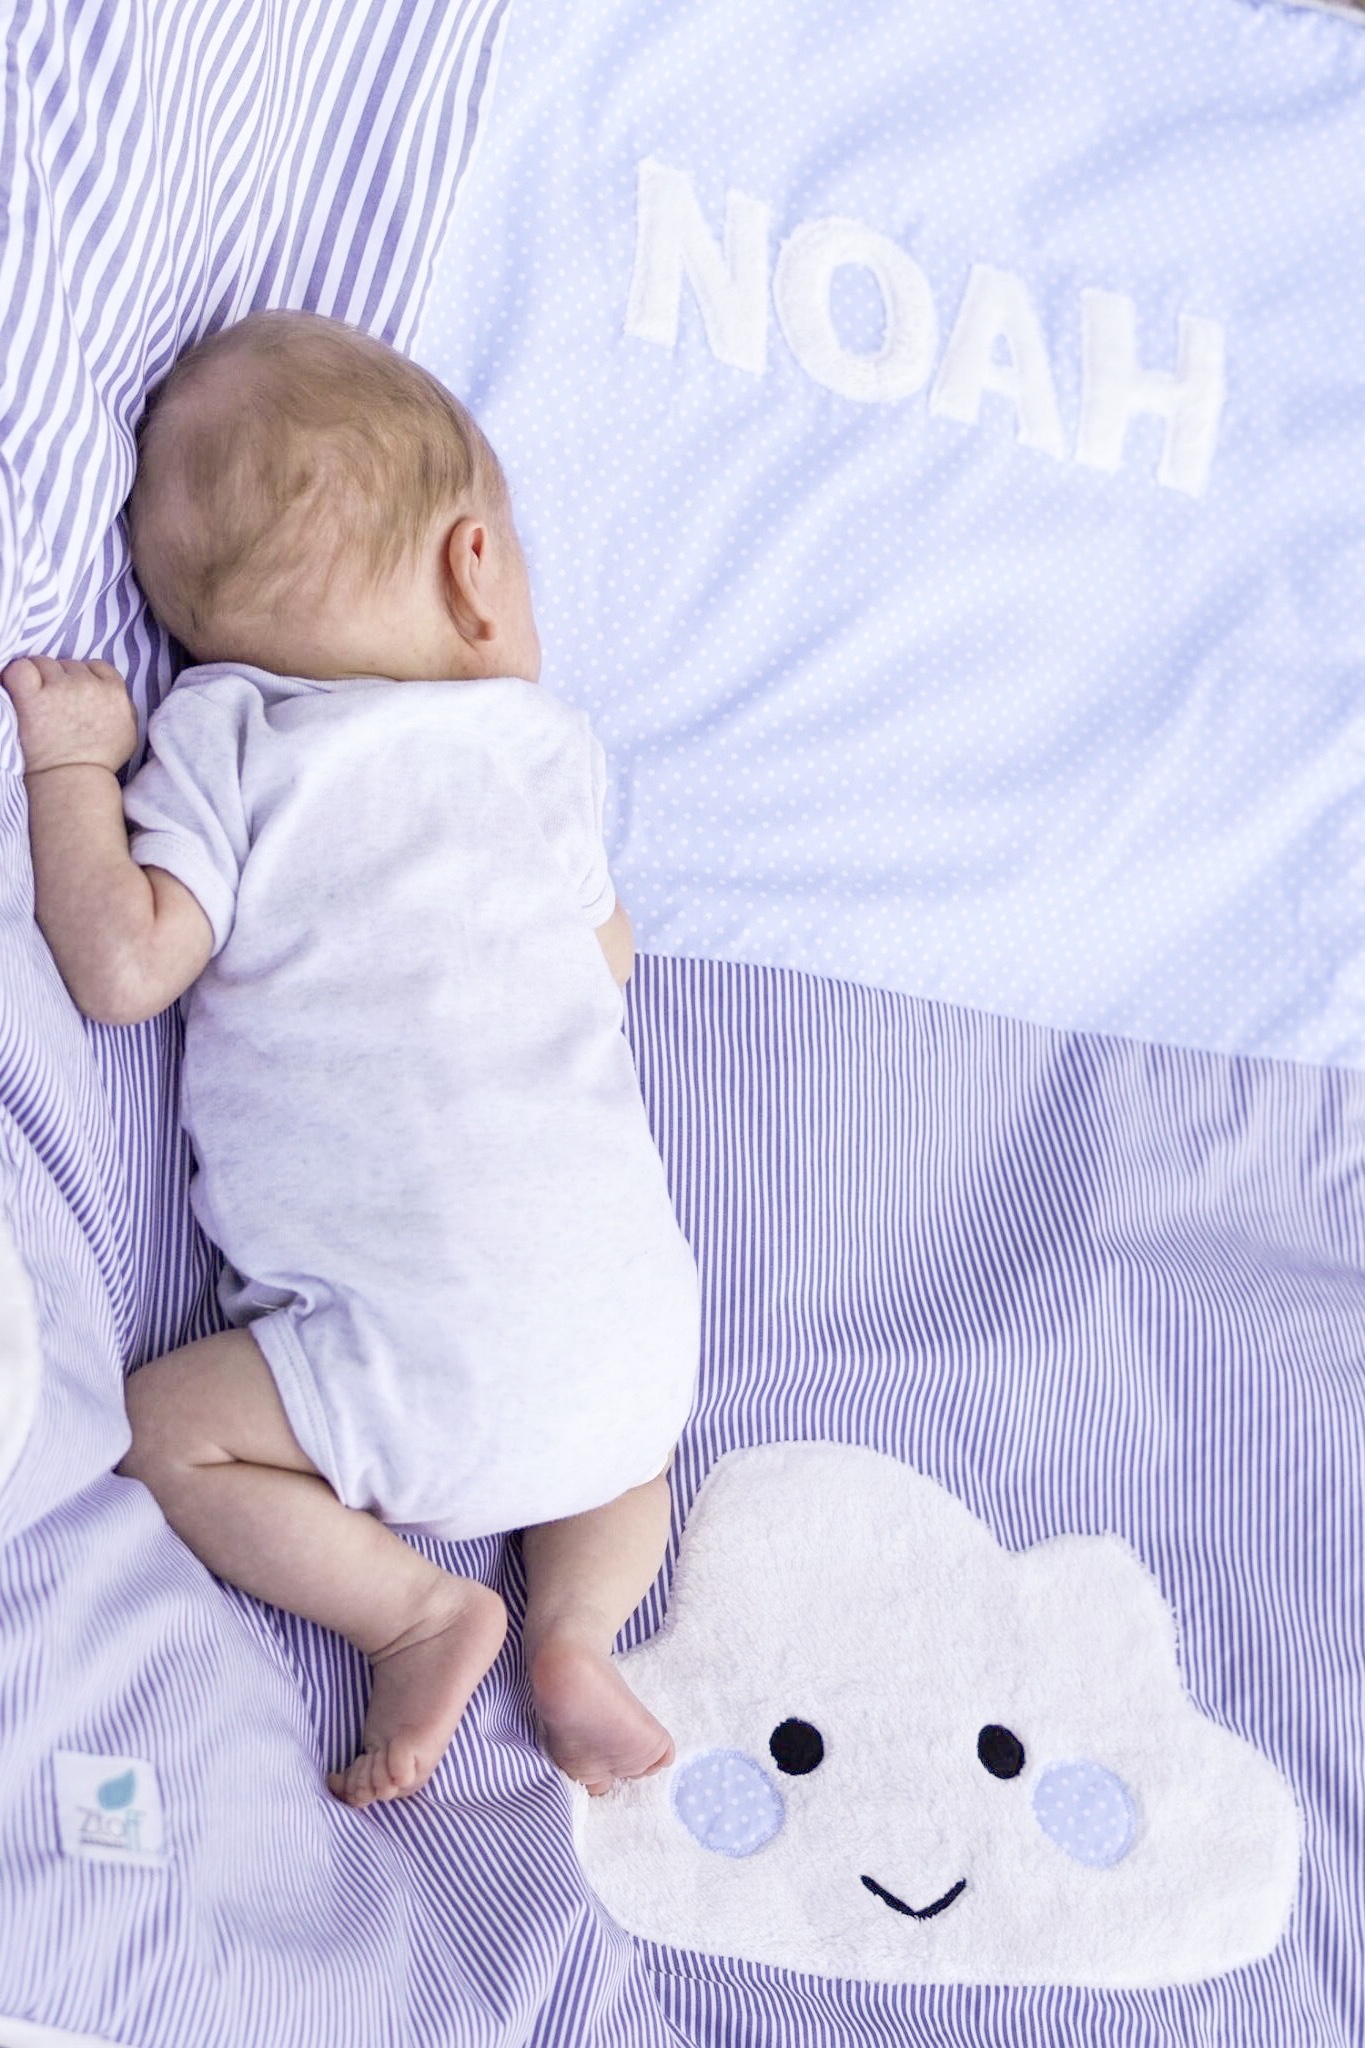 Ztoff Babydecke mit Namen- persönliches Geschenk für Babys